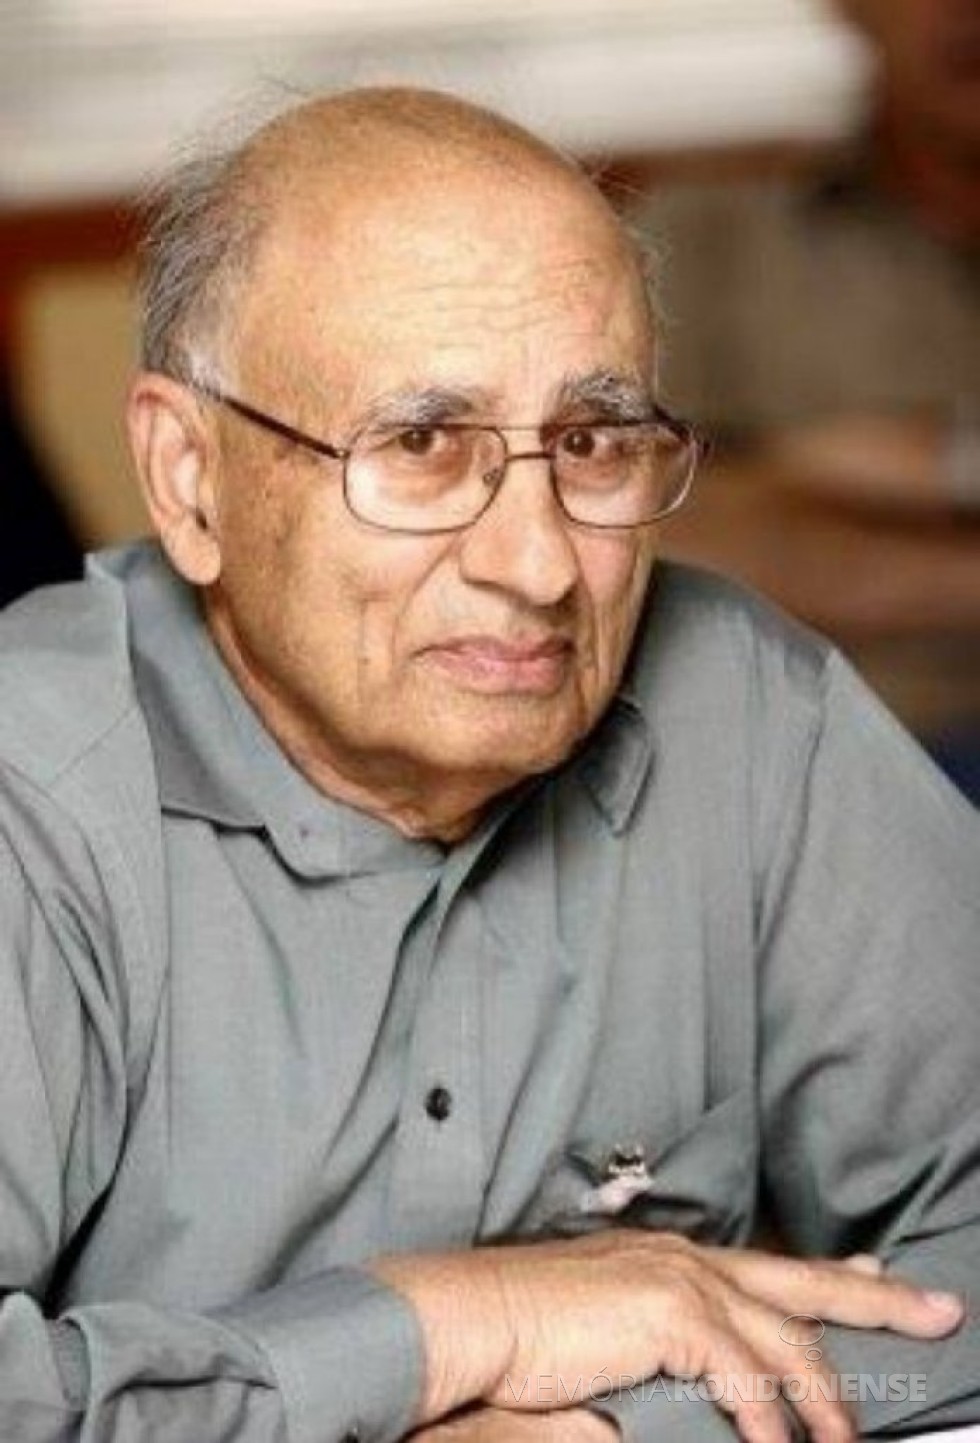 Engenheiro indiano-estadunidense Gurmukh Sarkaria, projetista da Itaipu Binacional, falecido em 22 de julho de 2014. Imagem: www.fabiocampana.com.br - FOTO 8 -